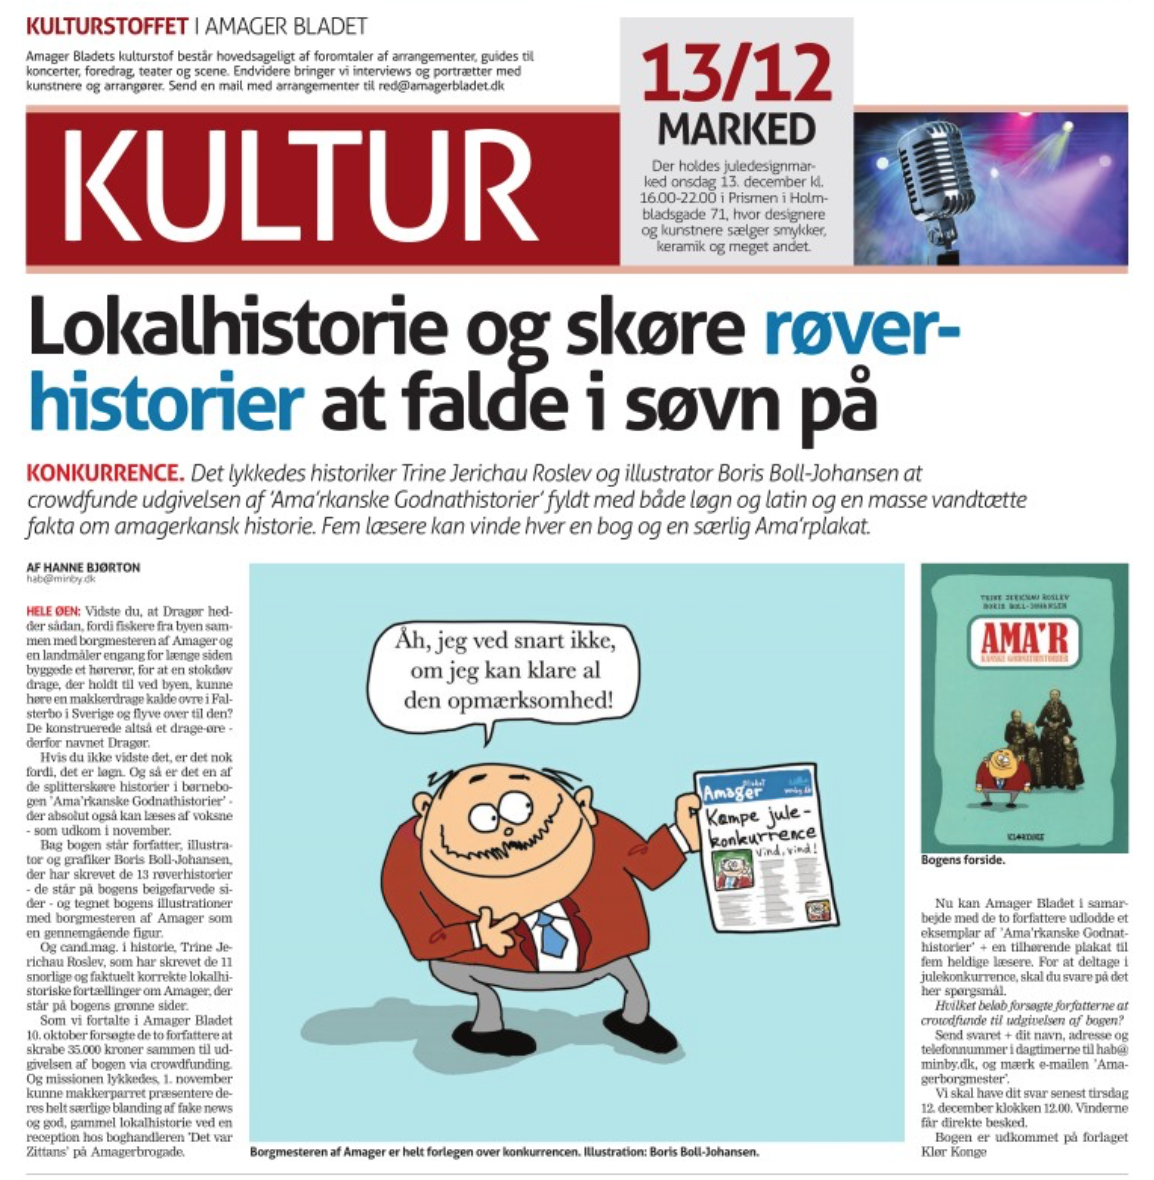 progressiv Senatet guld Konkurrence i Amager Bladet - vind Ama'rbøger og plakater! | KLØRKONGE.DK